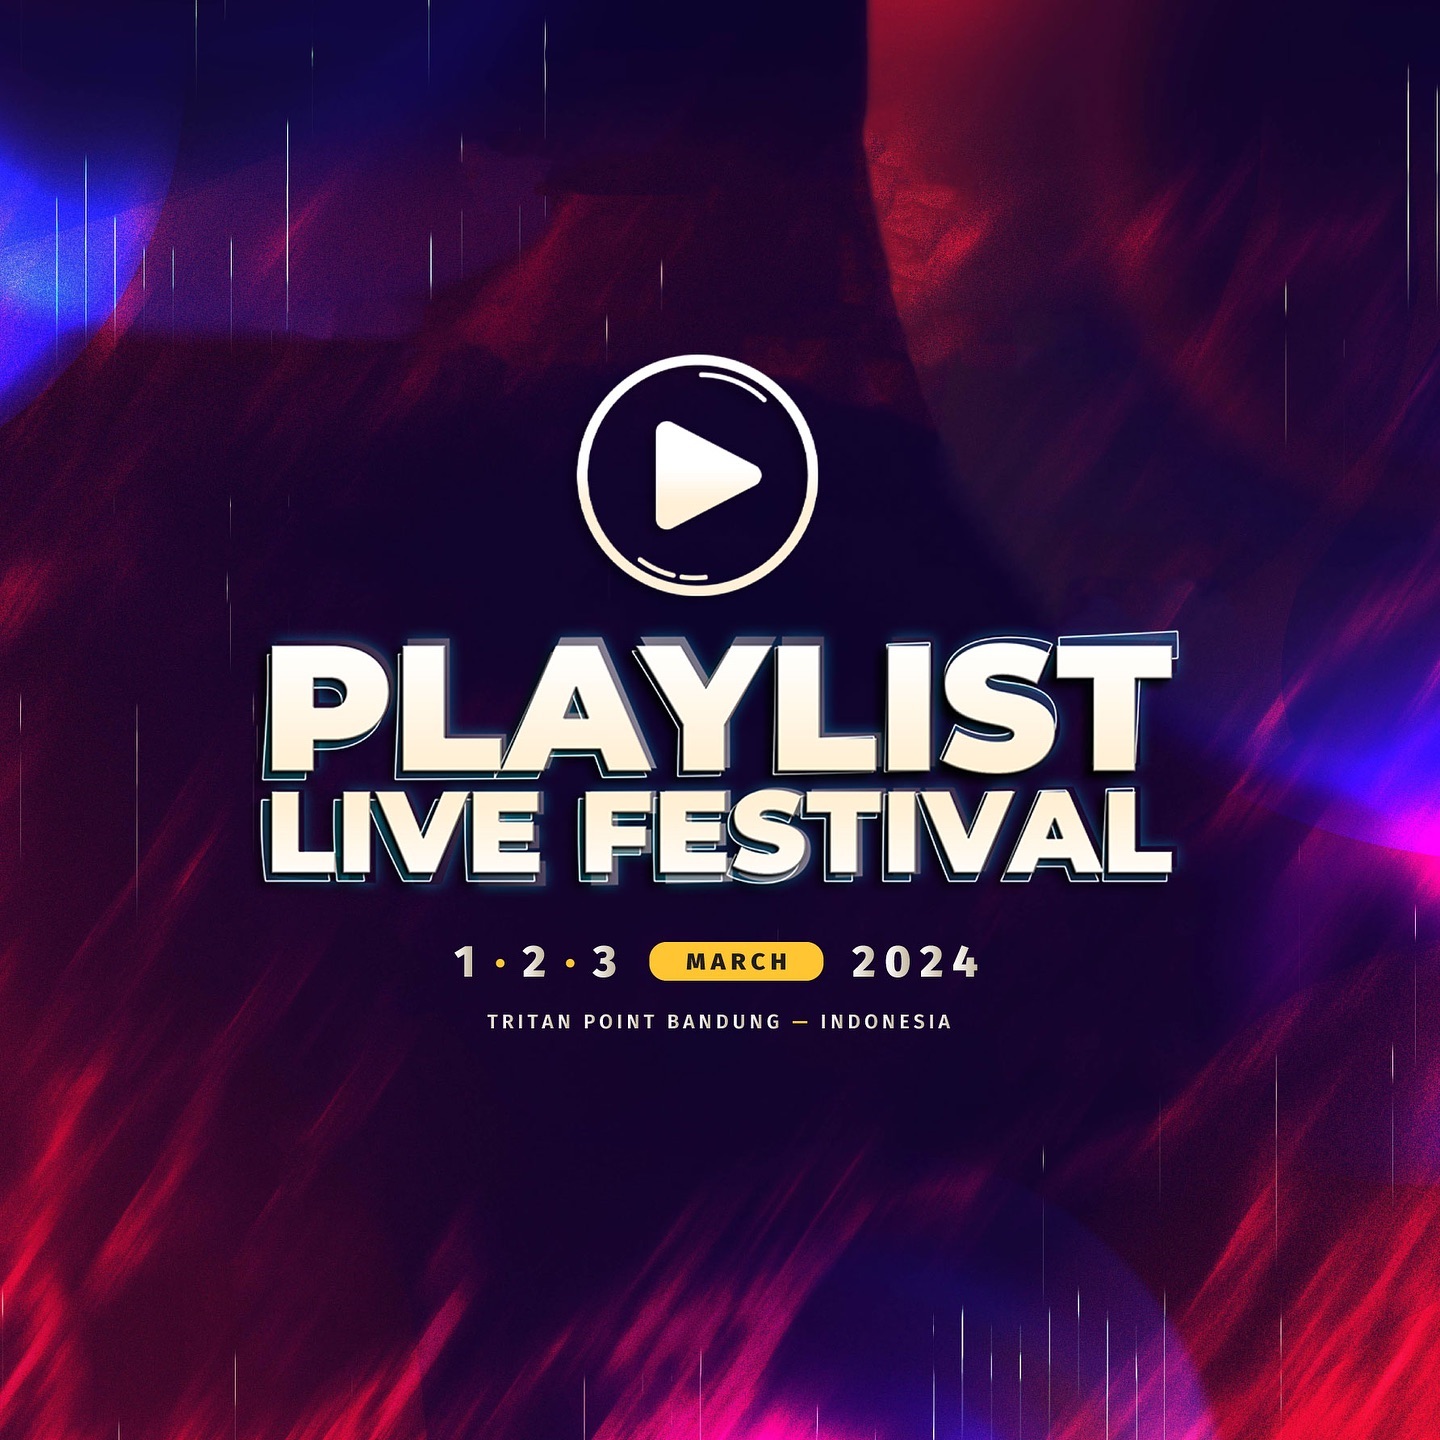 Playlist Live Festival 2024 di Bandung: Pengalaman Musikal yang Tak Terlupakan